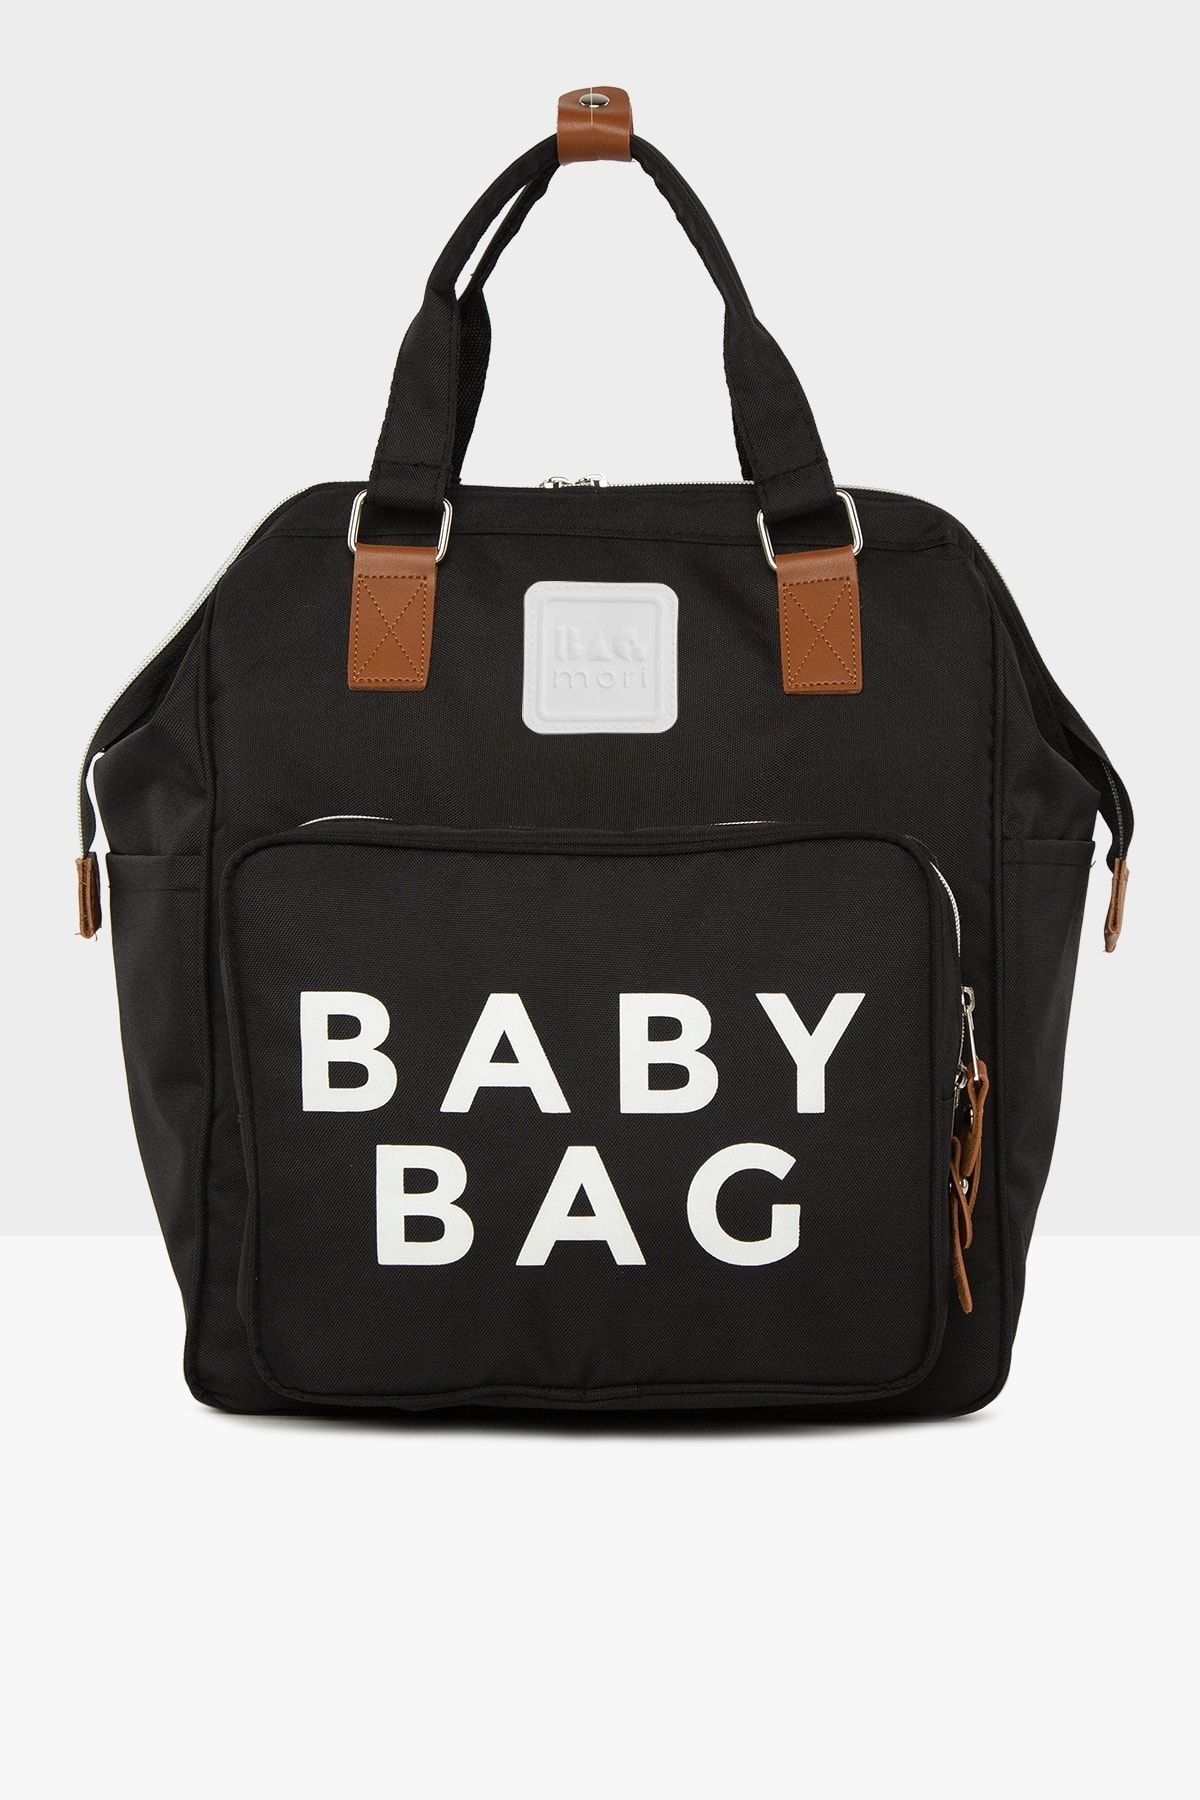 Bagmori Siyah Baby Bag Baskılı Cepli Anne Bebek Bakım Sırt Çantası M000005163